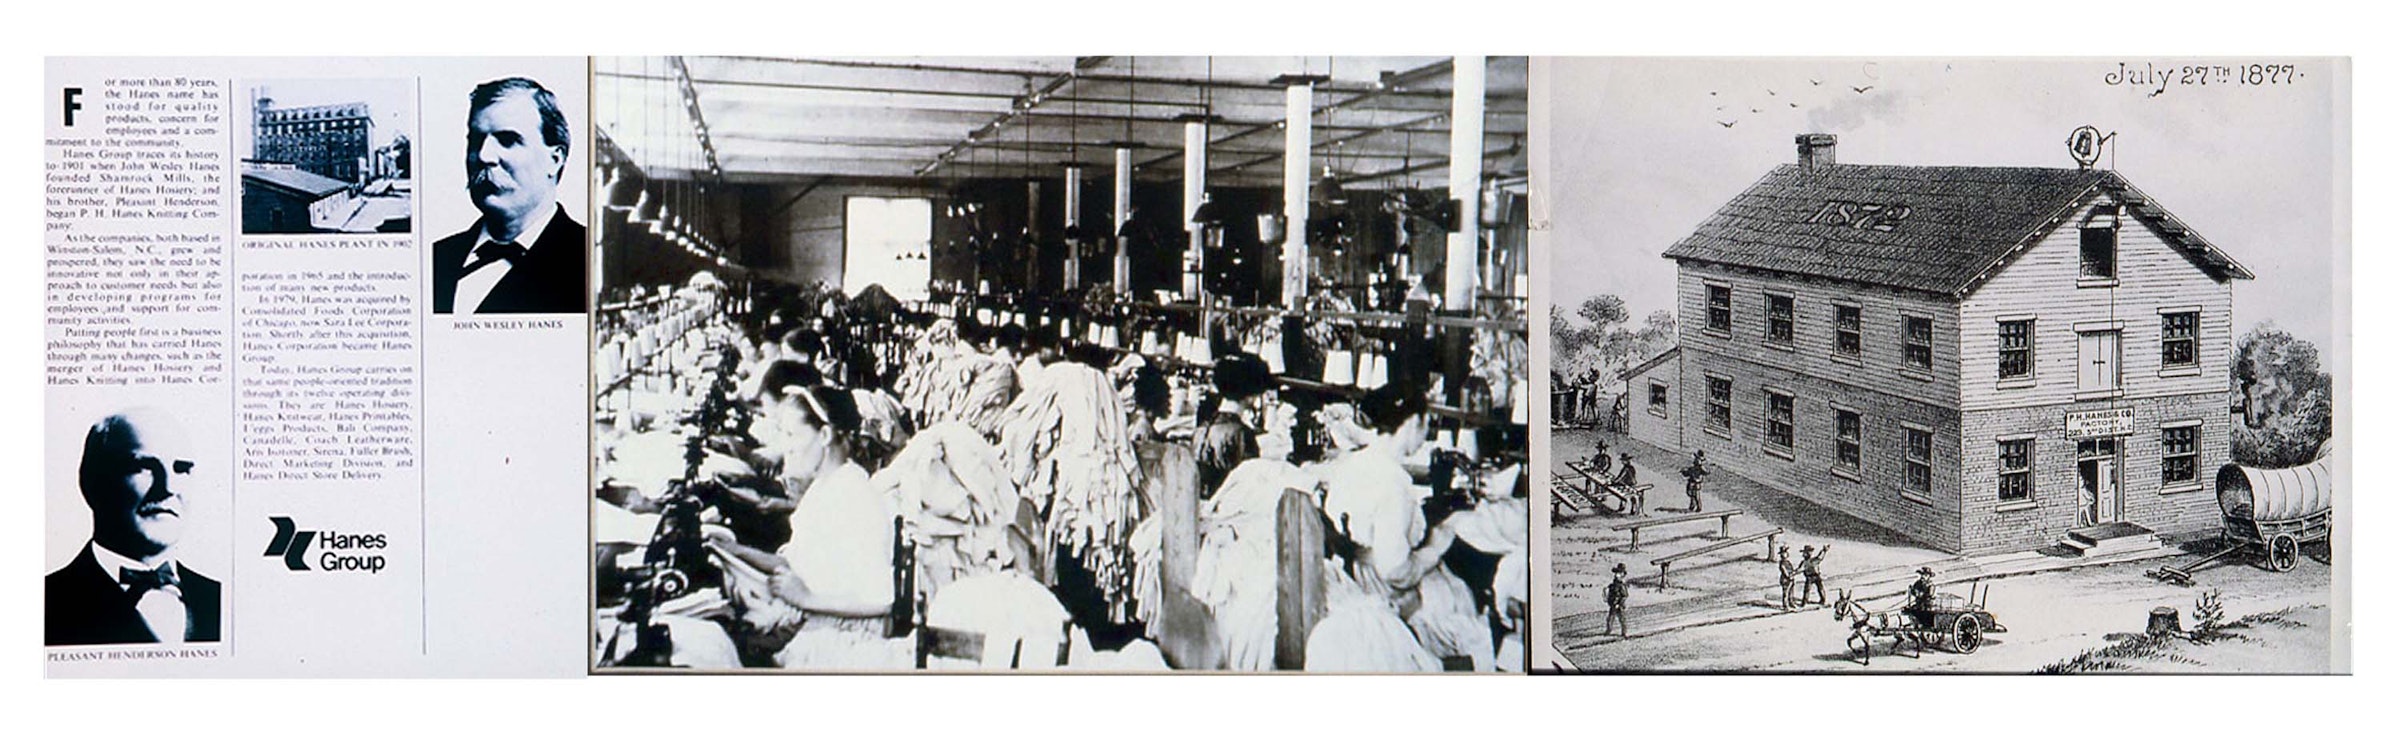 写真向かって左側下がプレザント・ヘンダーソン・ヘインズ氏　上がジョン・ウェスレイ氏／写真中央が工場の様子／写真向かって右側がタバコ工場を改造した縫製工場